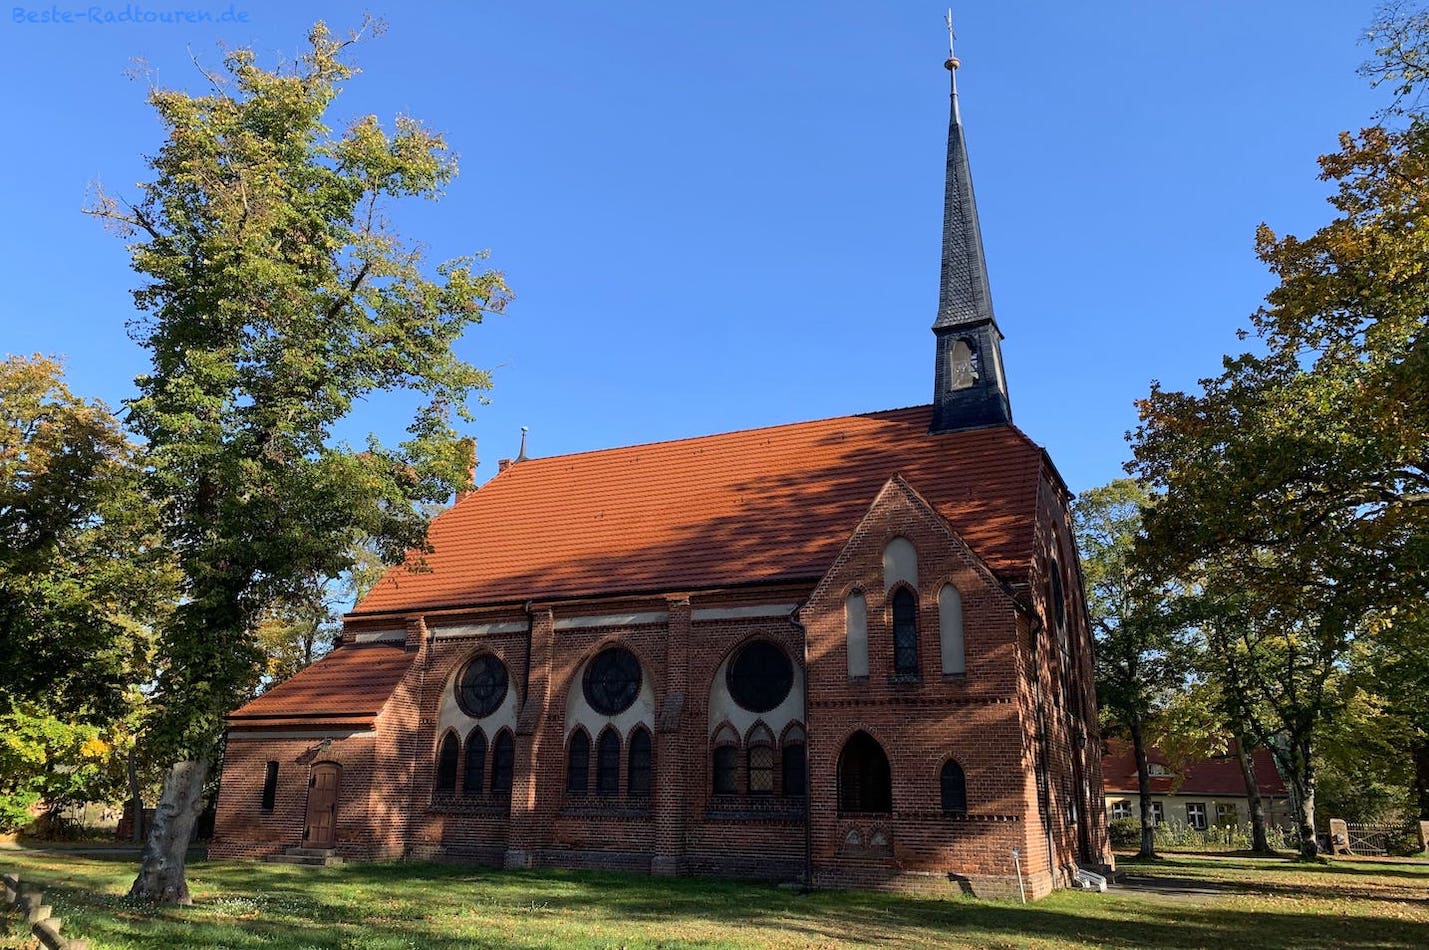 Dorfkirche Friedrichsthal, Gemeinde Oranienburg, Foto von der Seite